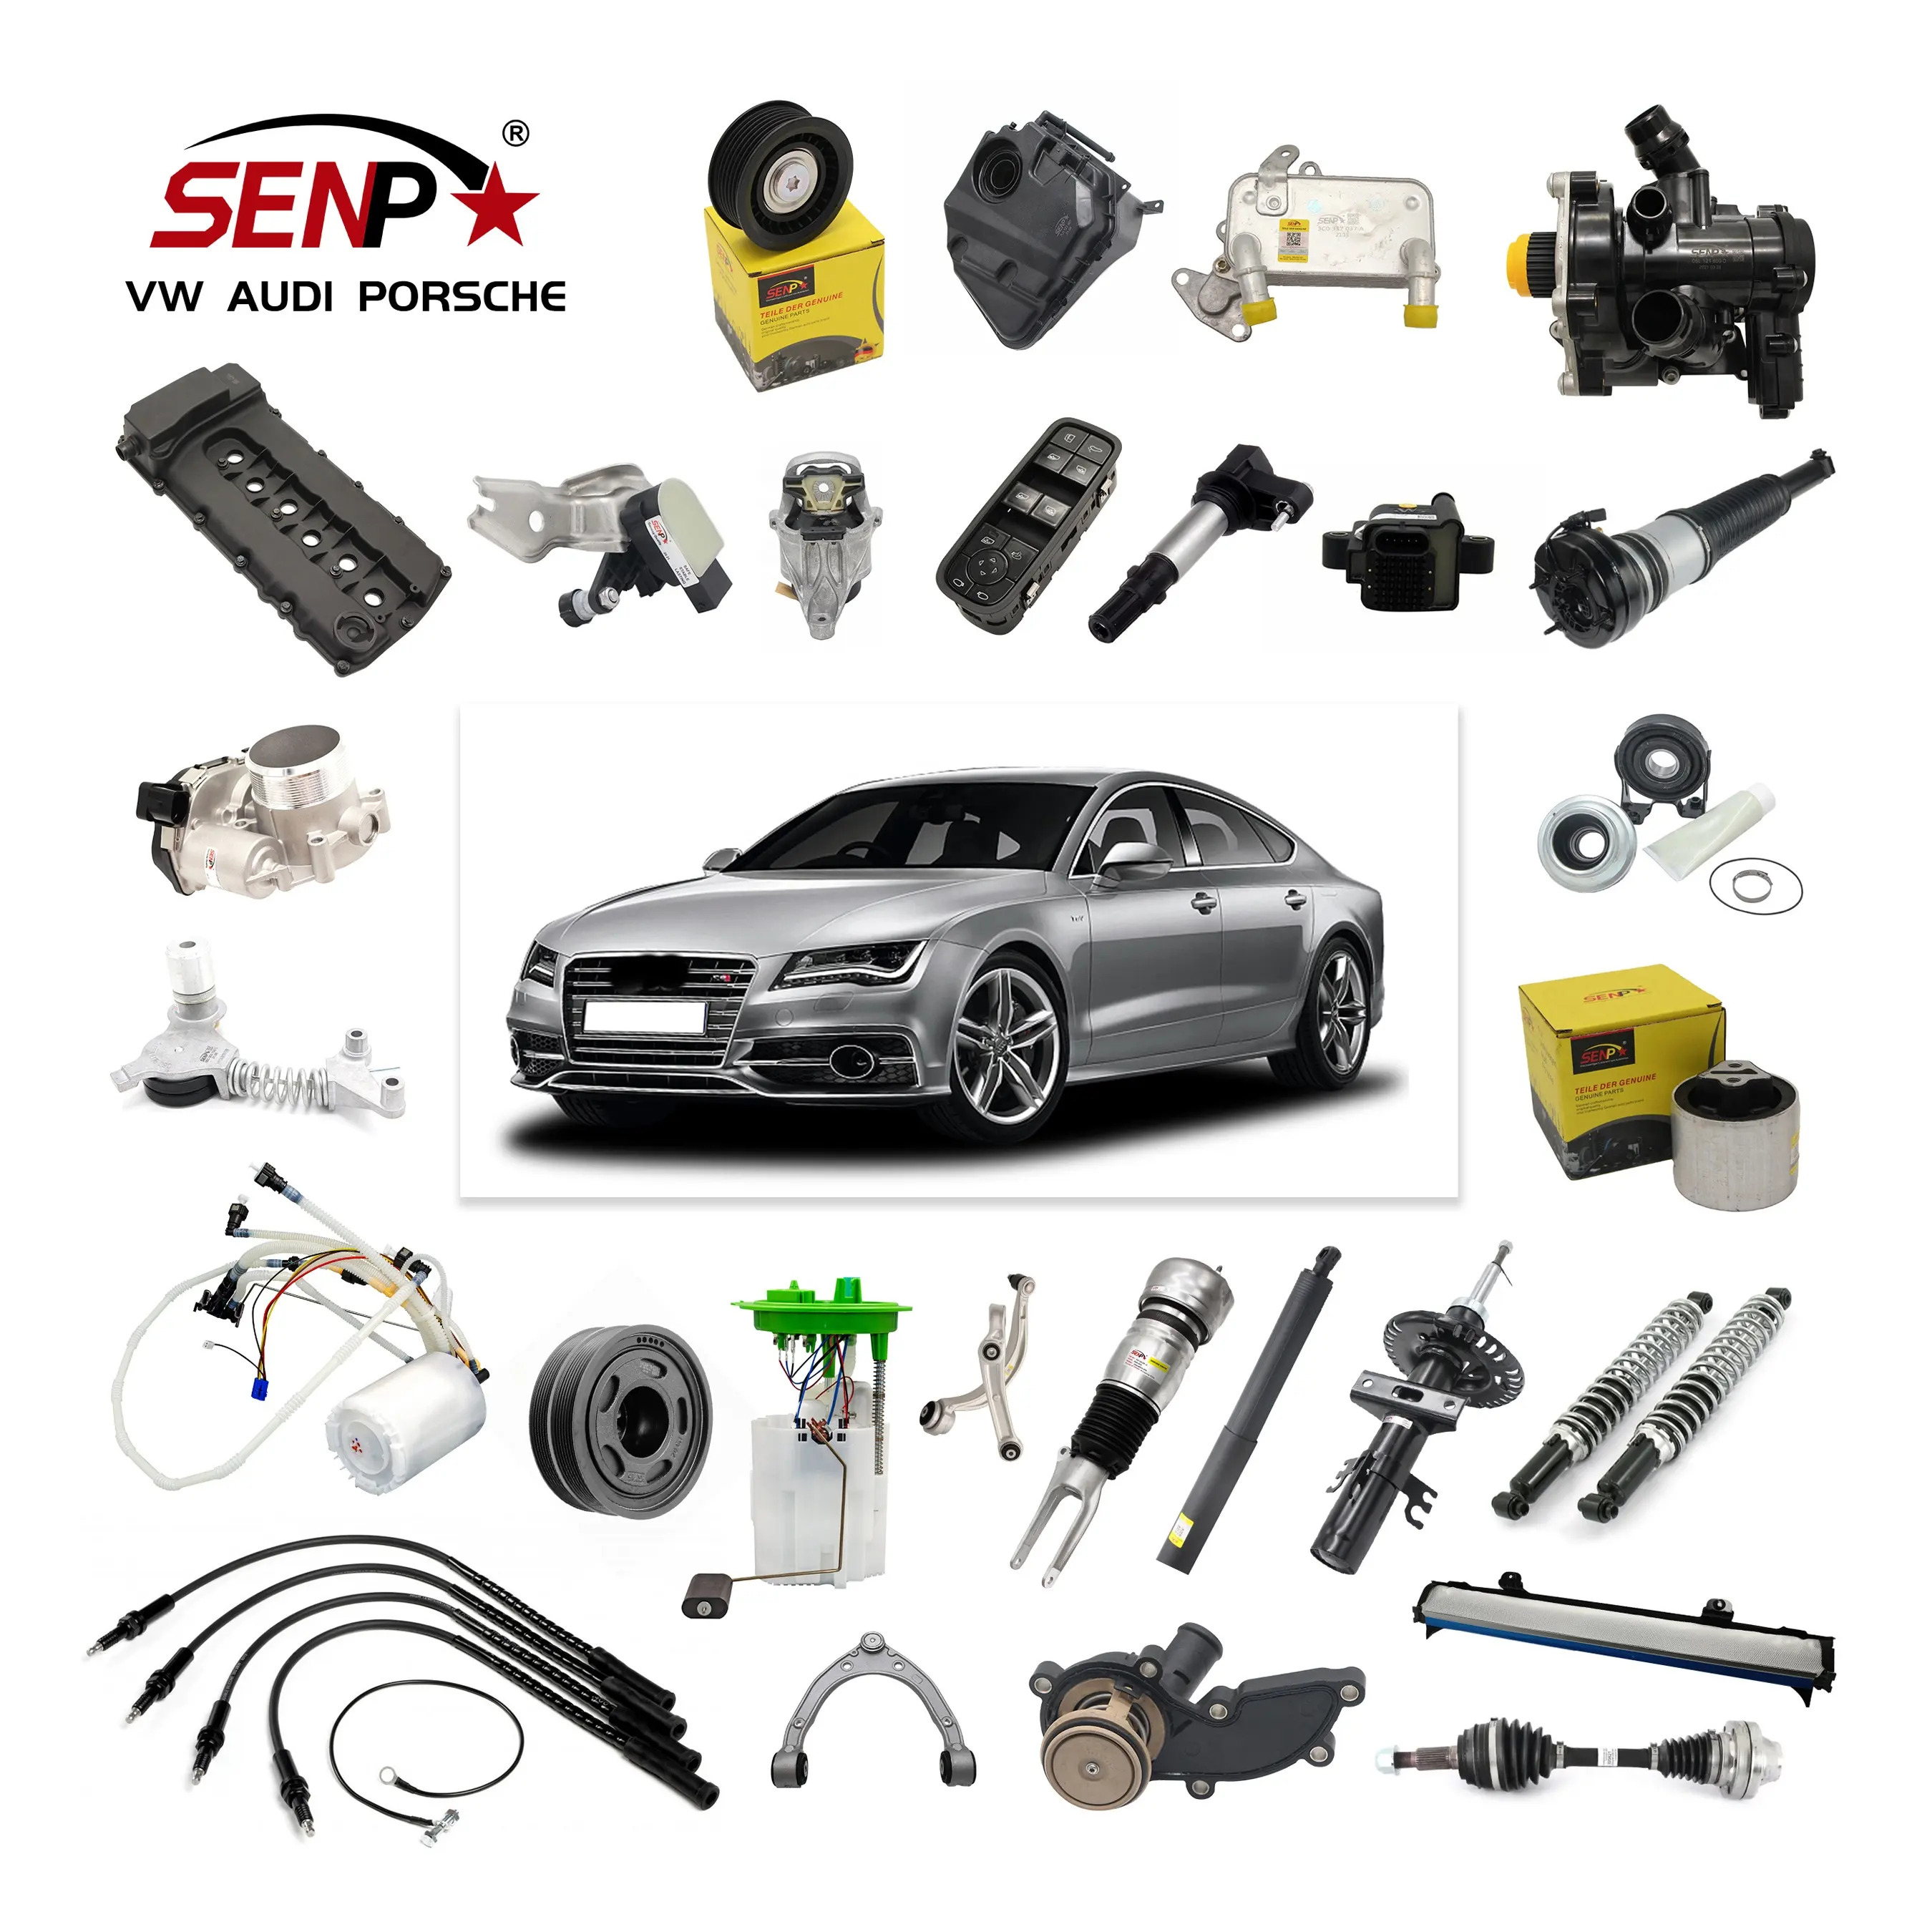 SENP-repuestos de coche de alta calidad para AUDI, VW, PORSCHE, accesorios y piezas de coche de alta calidad, Alemania